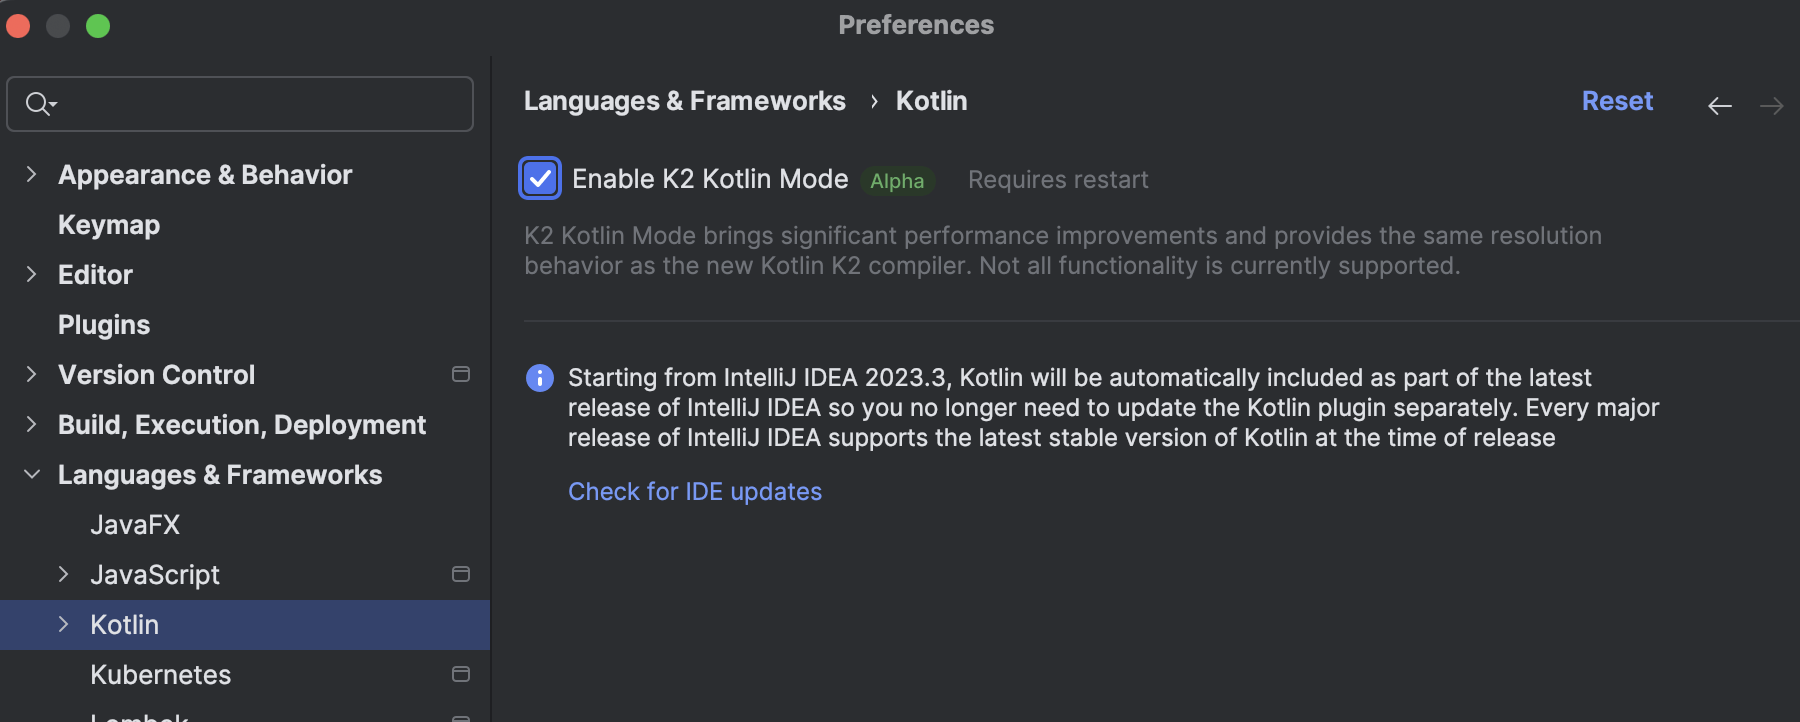 K2 Kotlin mode Alpha